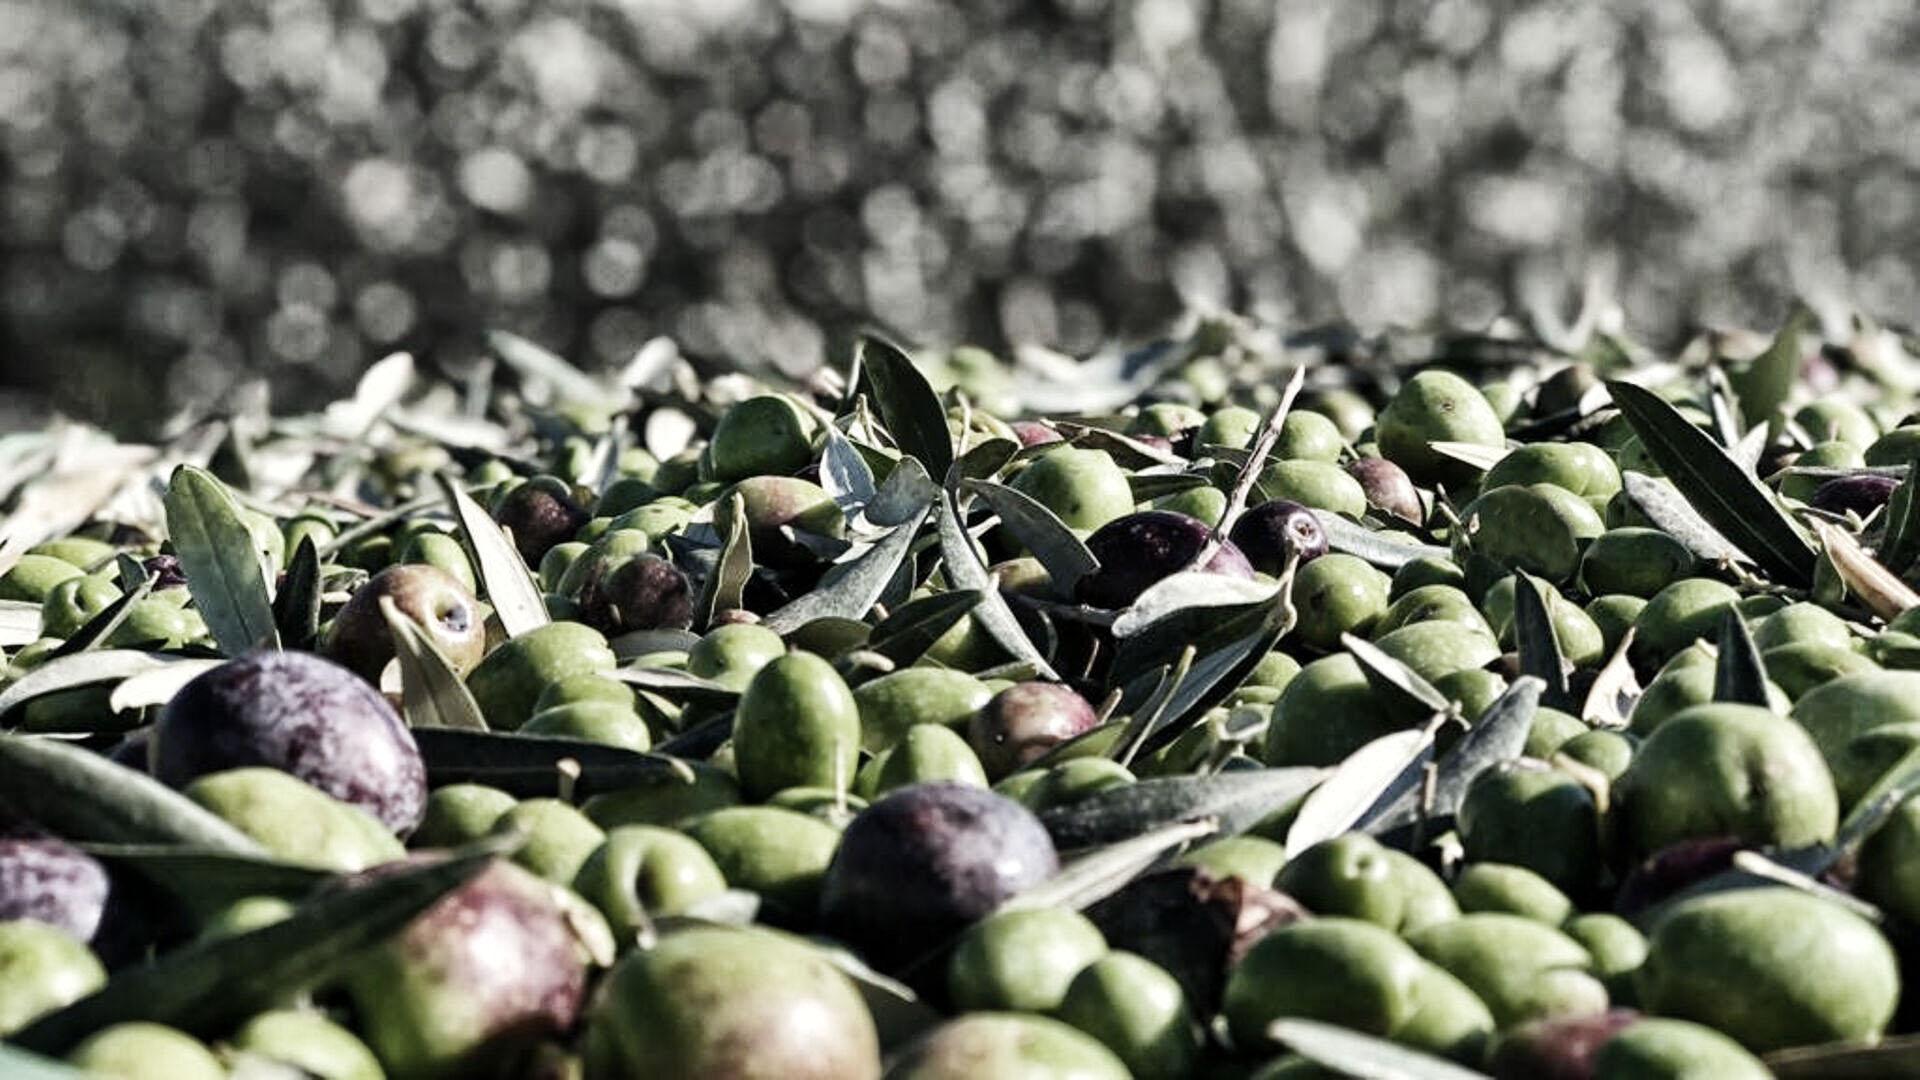 Extra virgin olive oil from Cortona- Tuscany- Cantina Canaio Cortona